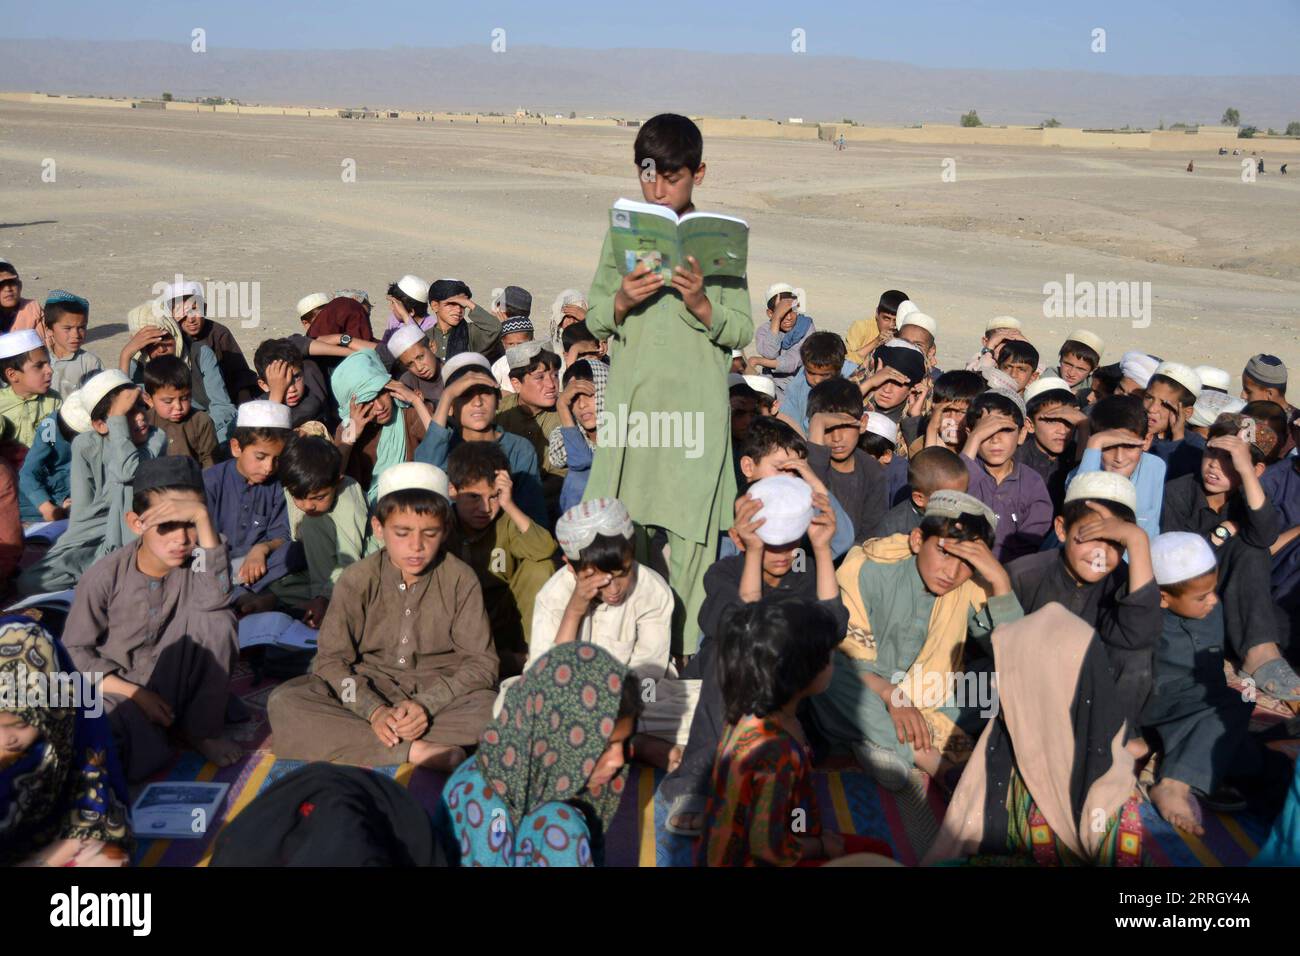 220603 -- KANDHAR, 3. Juni 2022 -- Ein Junge liest während einer Klasse an einer mobilen Schule in der Provinz Kandhar, Afghanistan, 2. Juni 2022. Eine mobile Schule wurde in der afghanischen Provinz Kandhar eingerichtet. Die mobile Schule reist von Dorf zu Dorf, um lokalen Kindern Bildungschancen zu bieten. Foto von /Xinhua AFGHANISTAN-KANDHAR-MOBILE SCHULE SanullahxSeiam PUBLICATIONxNOTxINxCHN Stockfoto